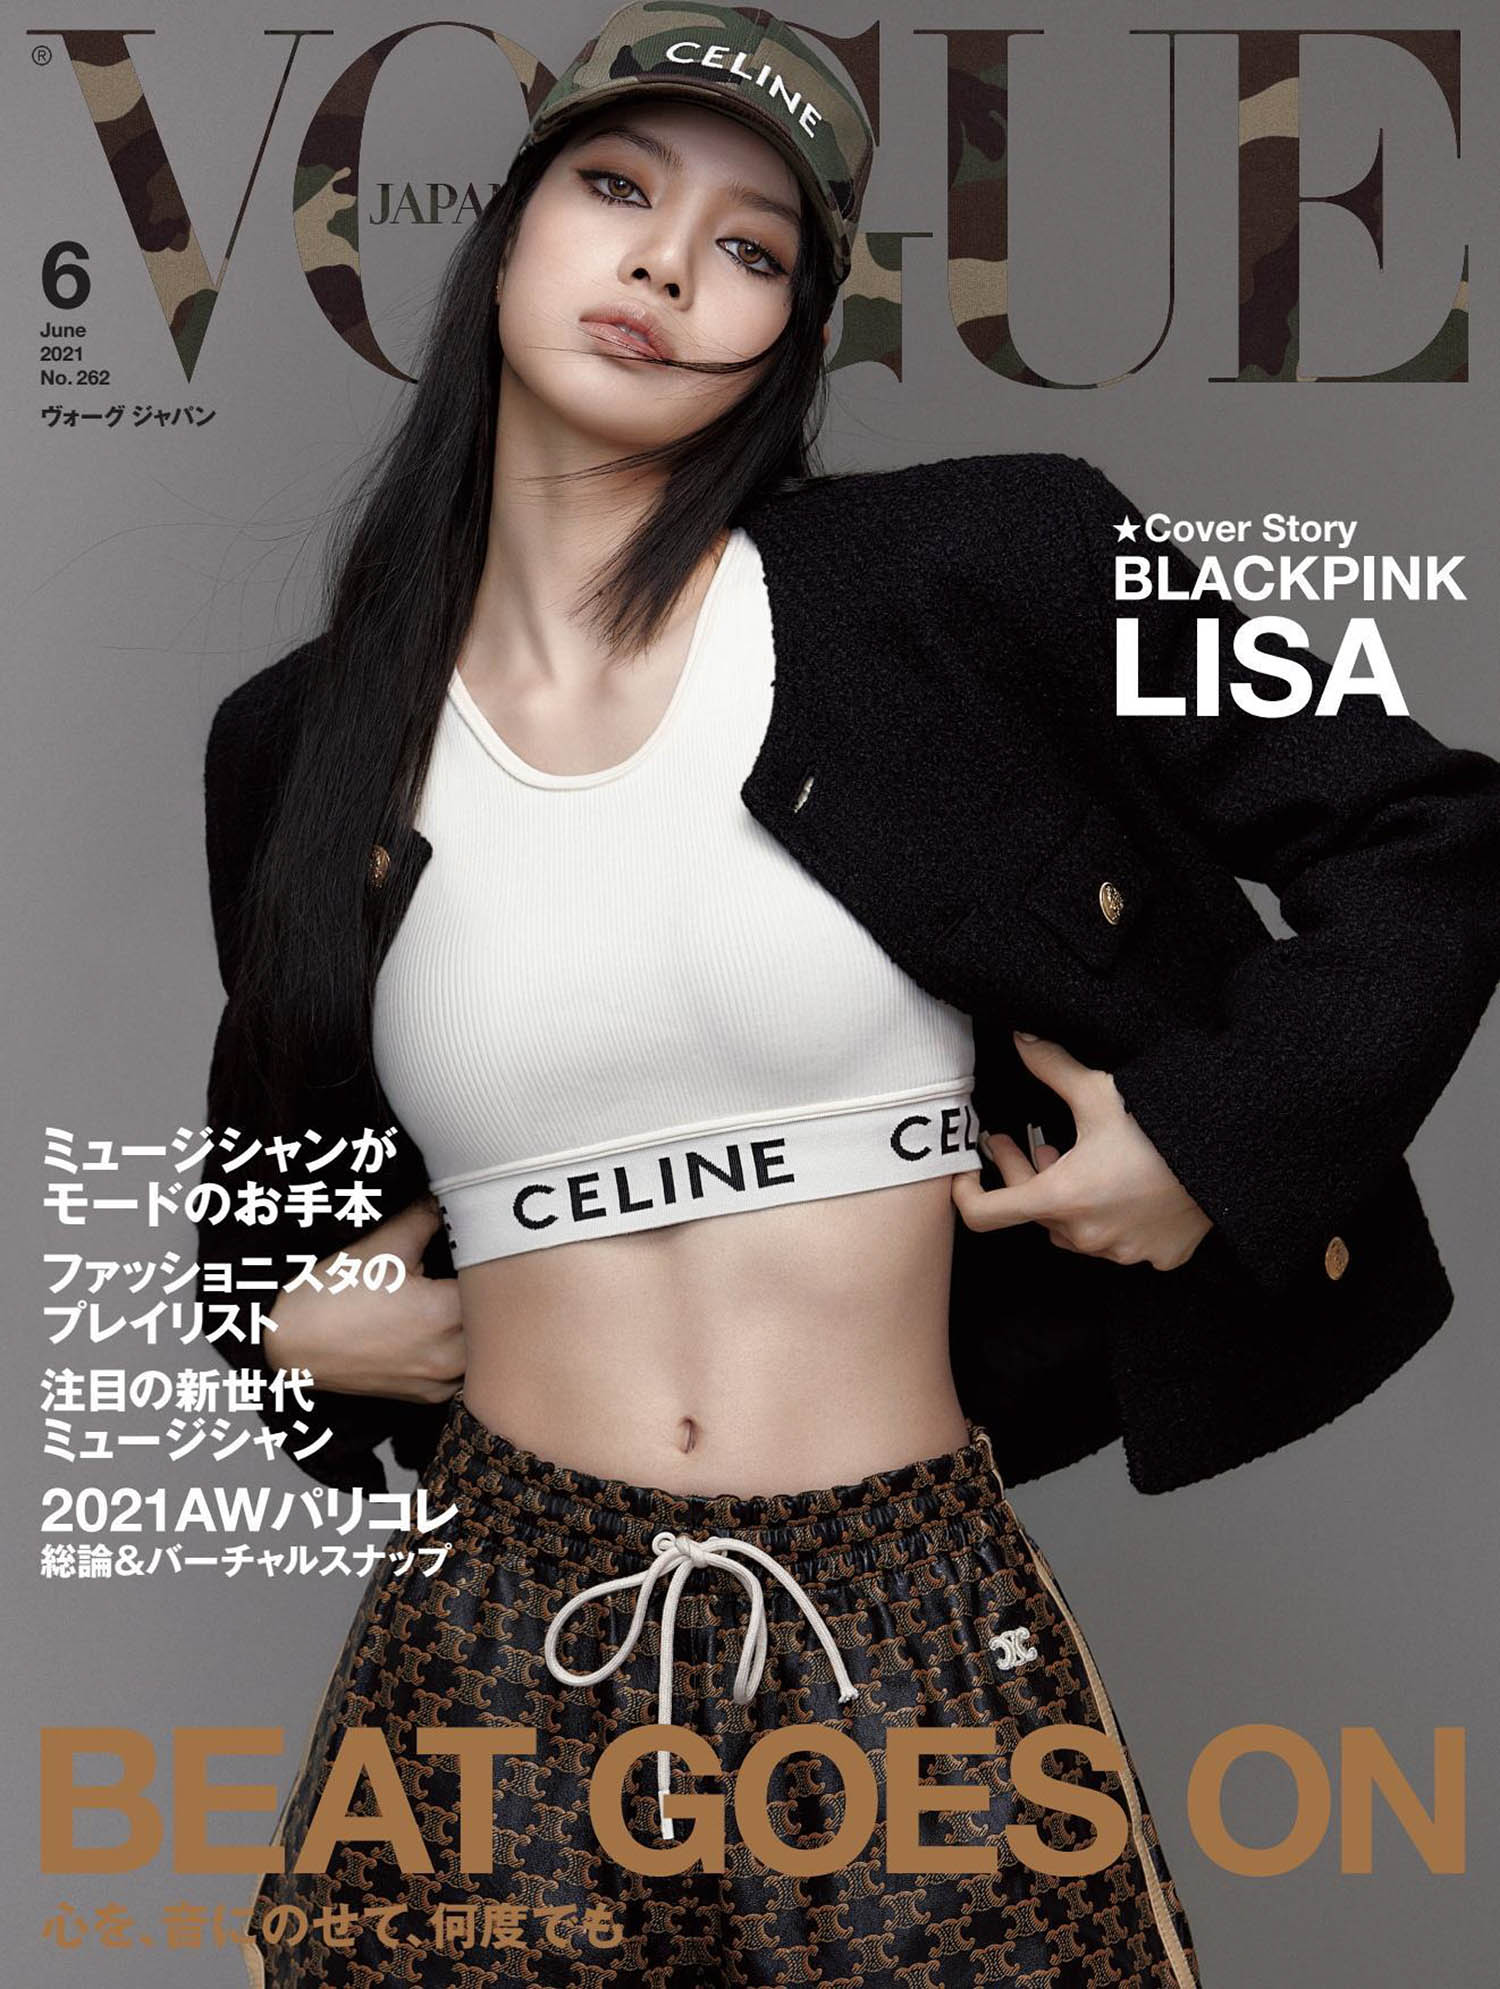 Blackpink’s Lisa covers Vogue Japan June 2021 by Kim Hee June